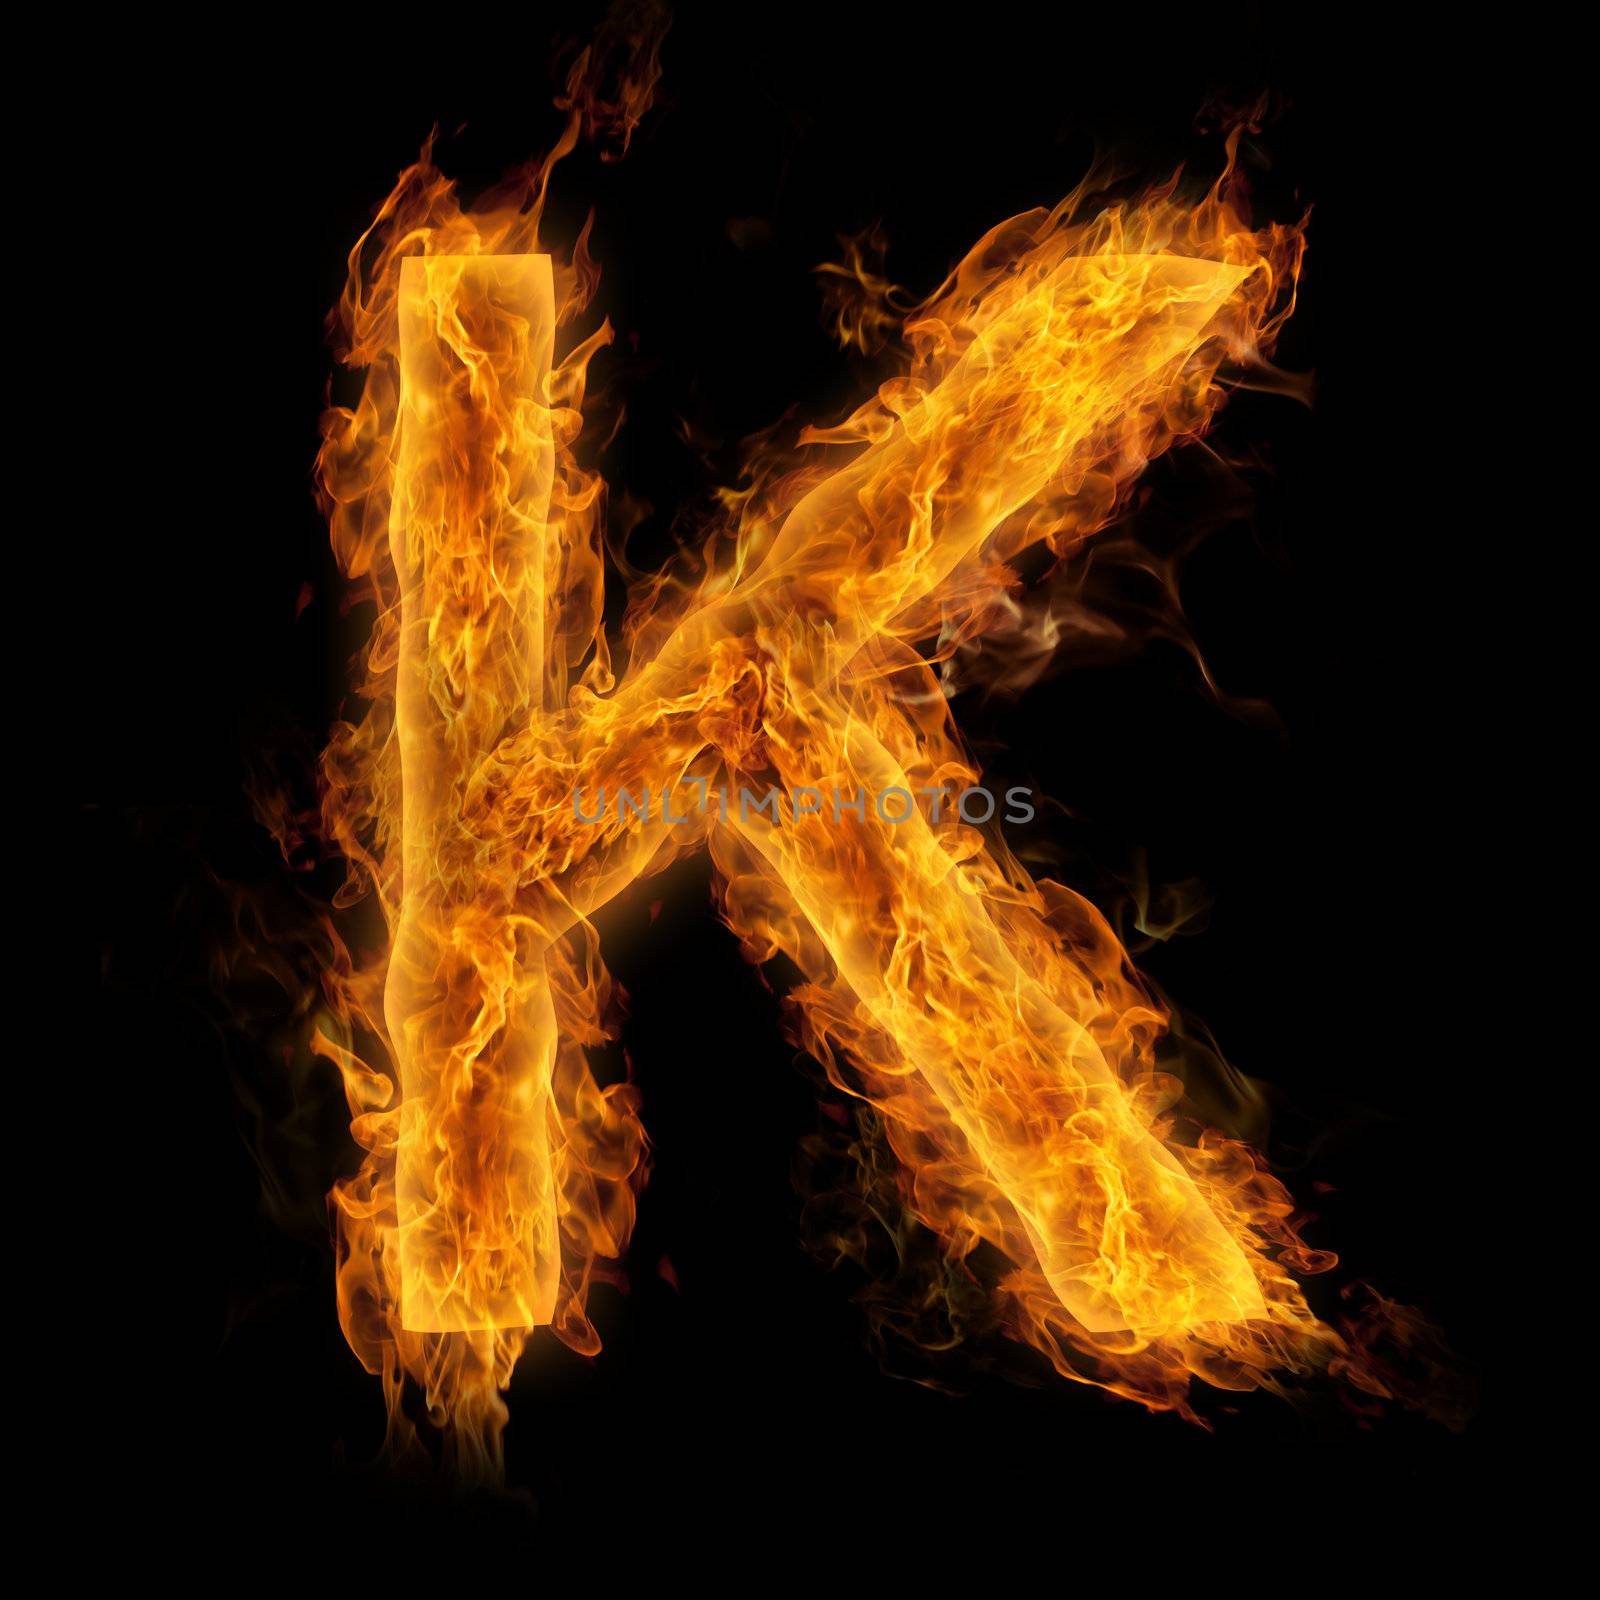 Flaming Letter K by melpomene